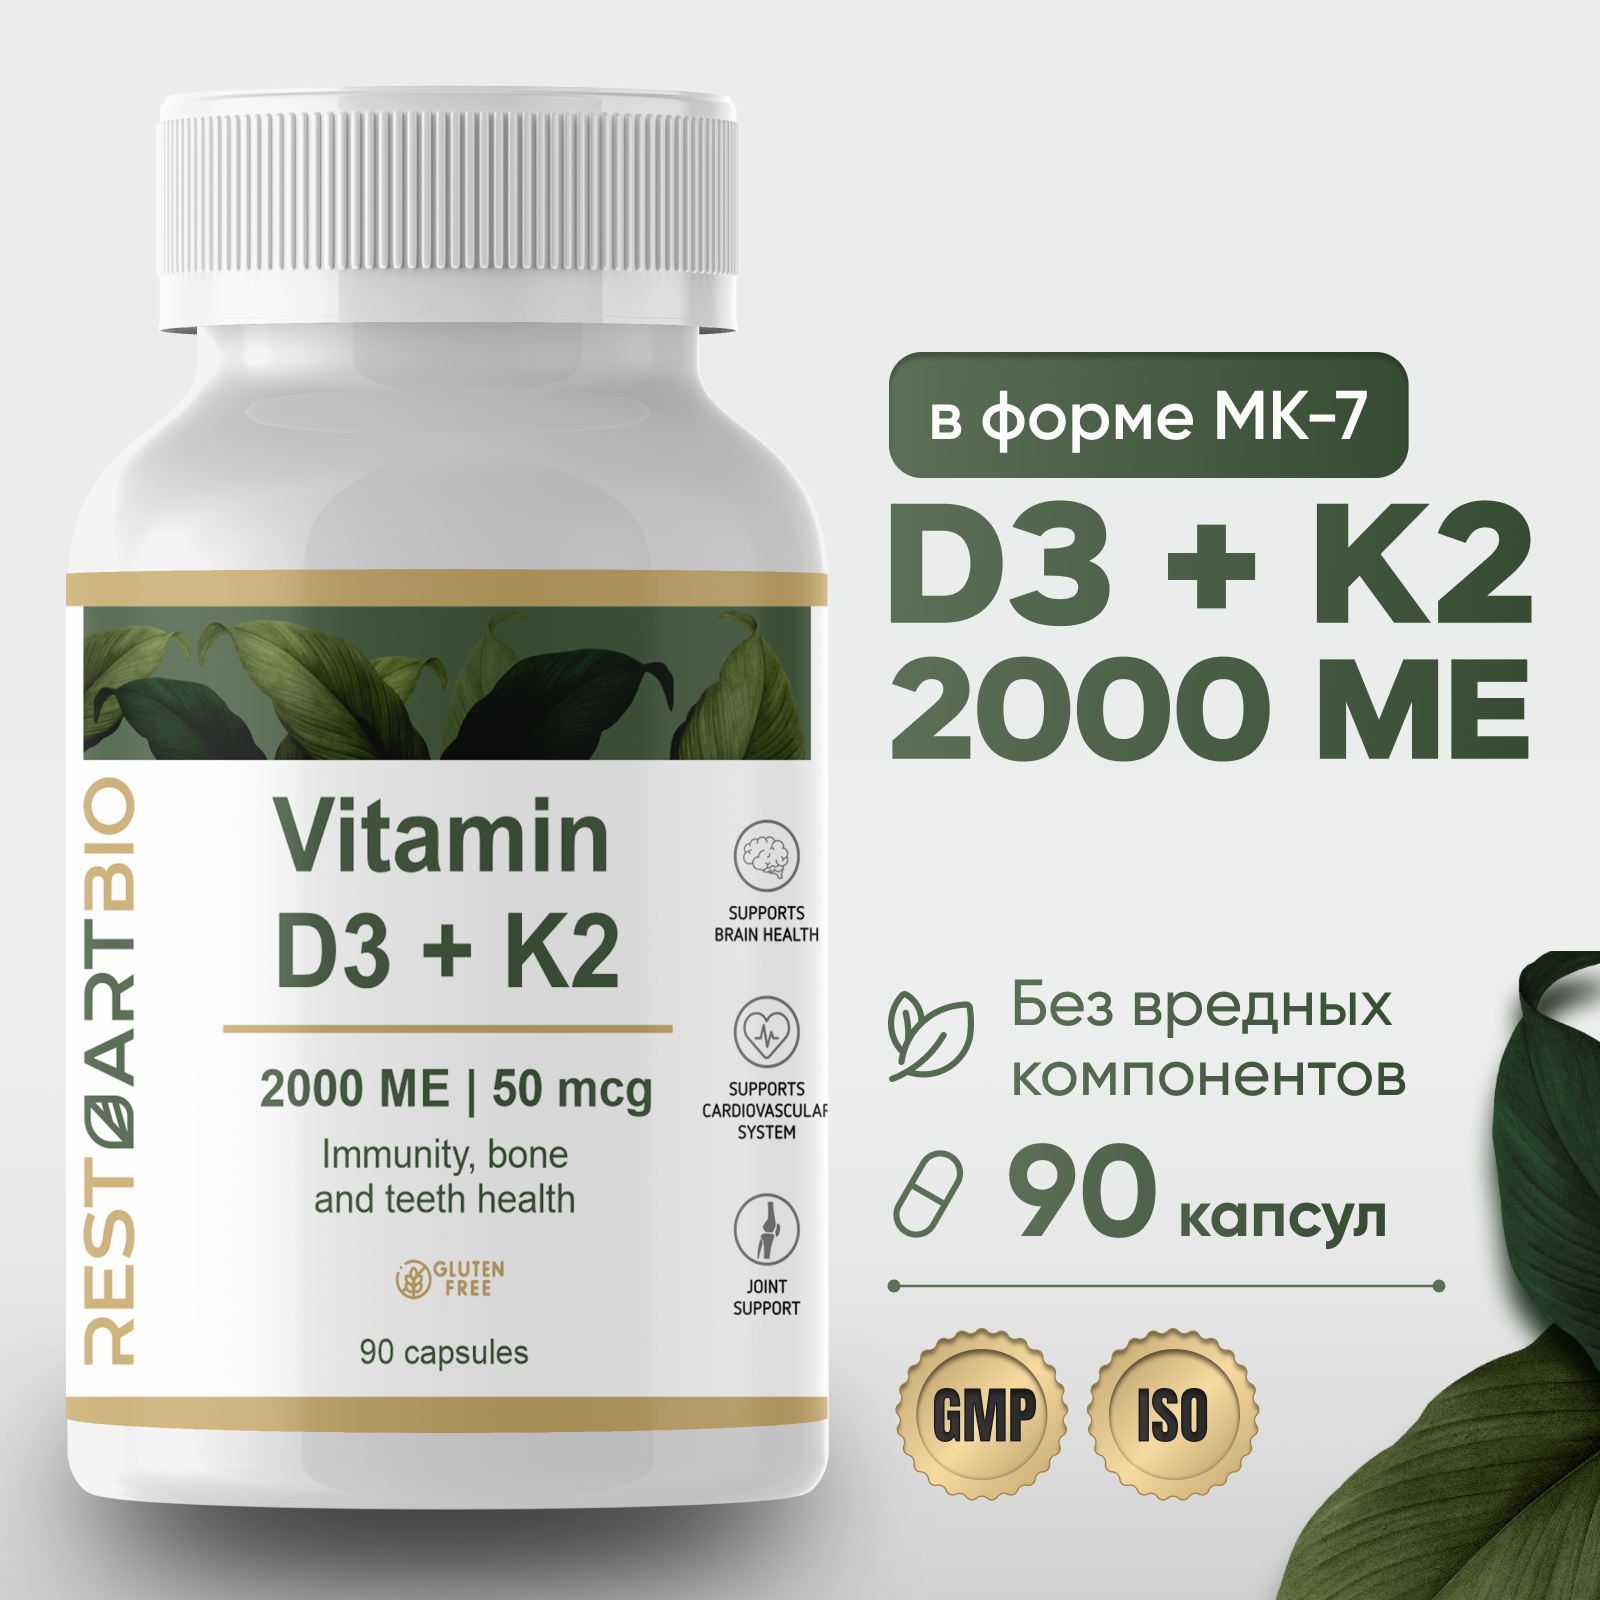 Витамин D3 K2 RESTARTBIO 2000МЕ 90 капсул без вредных компонентов высокая дозировка vitamin Д3 2000ME и K2 50 mcg